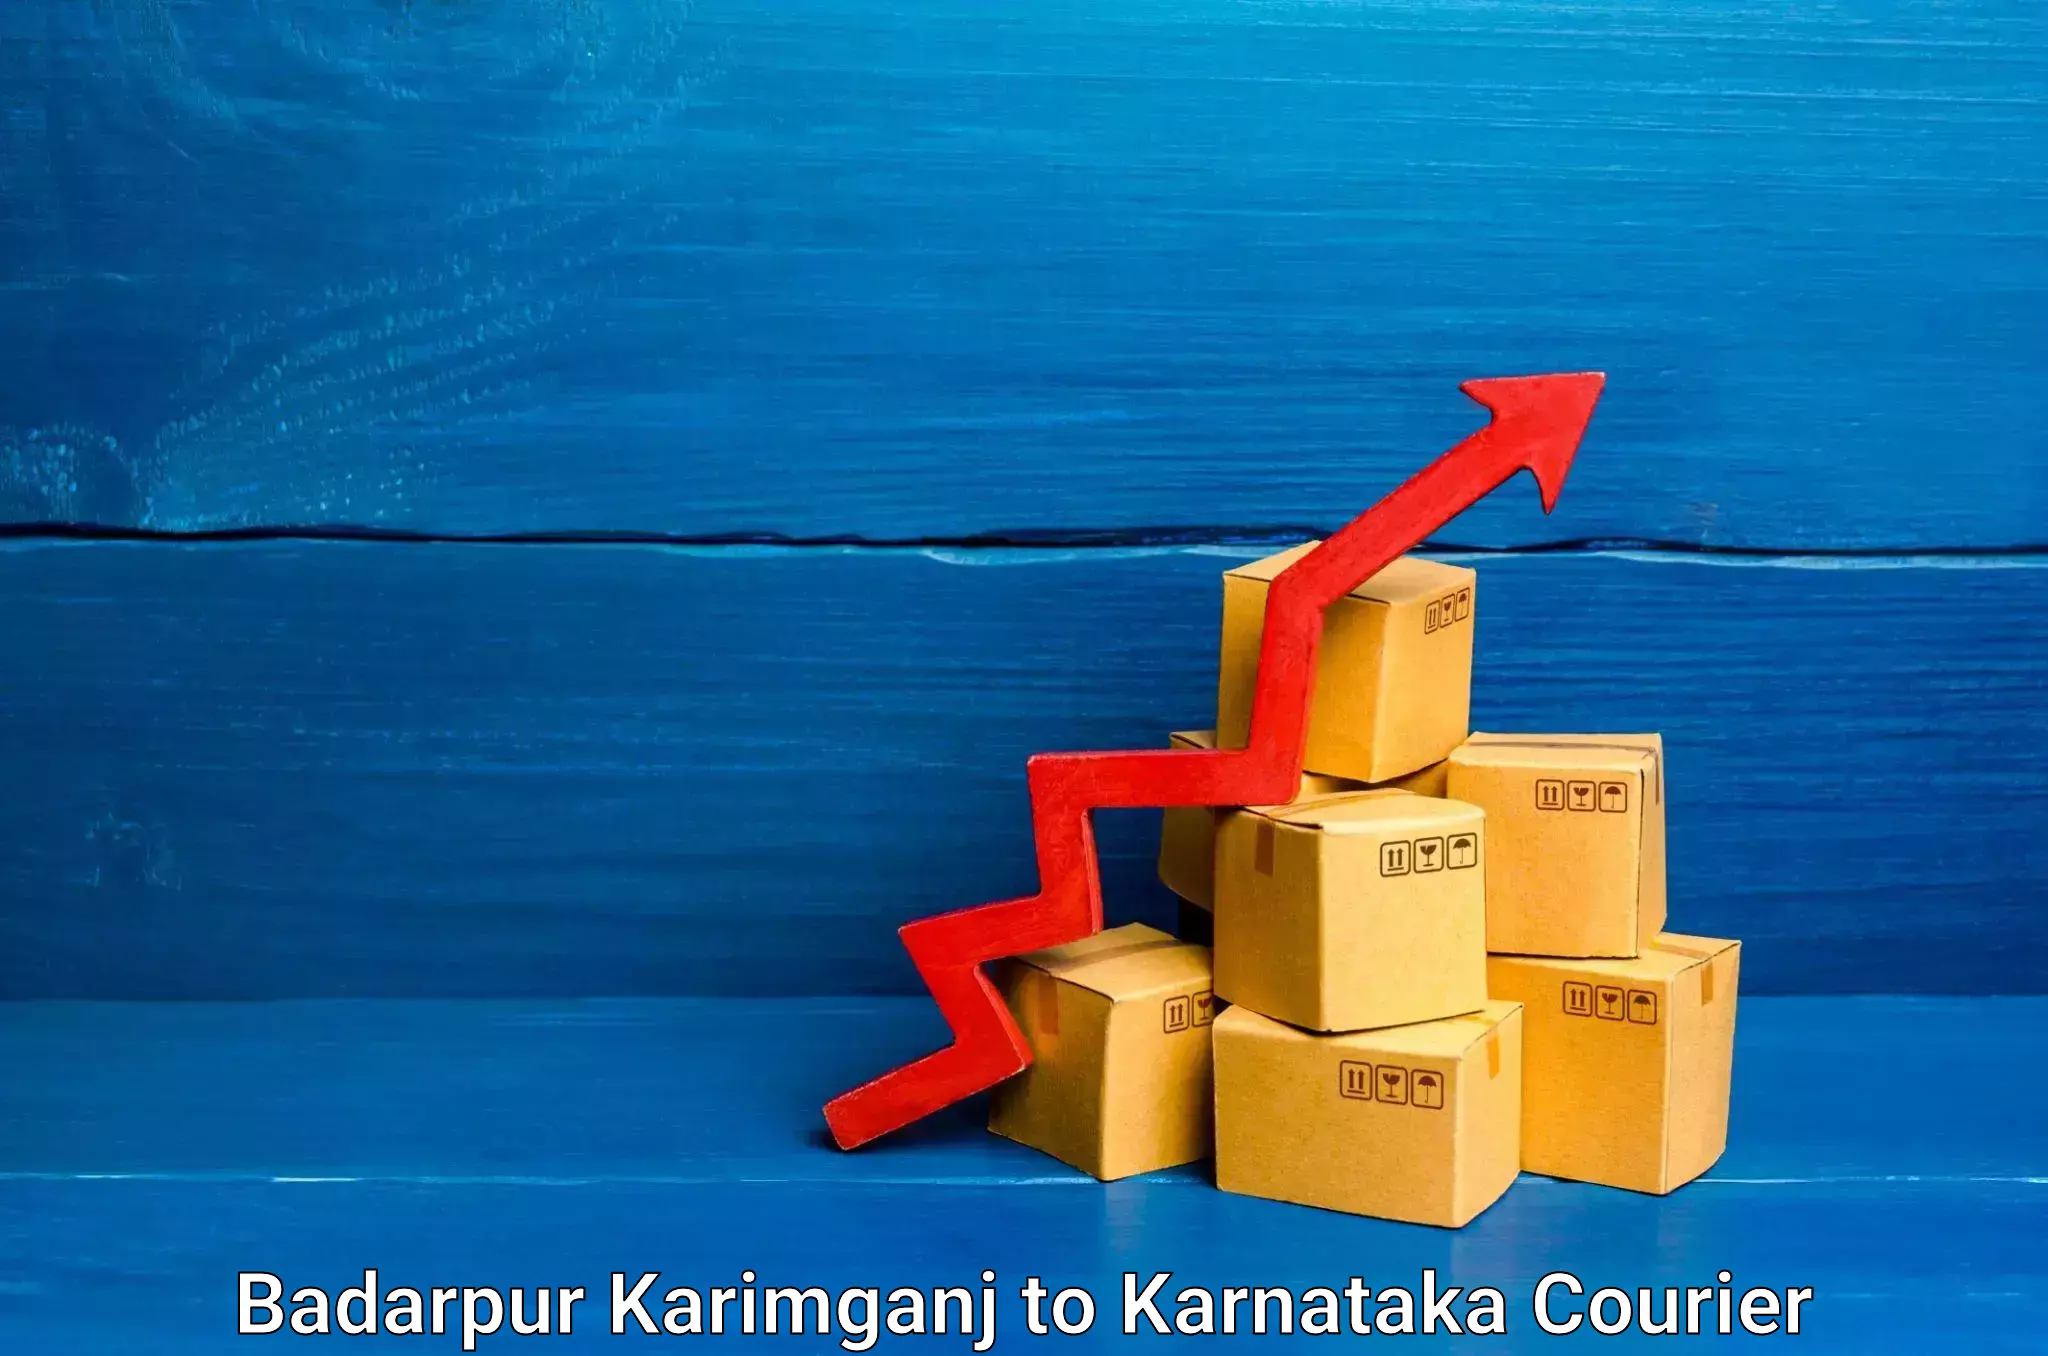 24-hour delivery options Badarpur Karimganj to Kanjarakatte